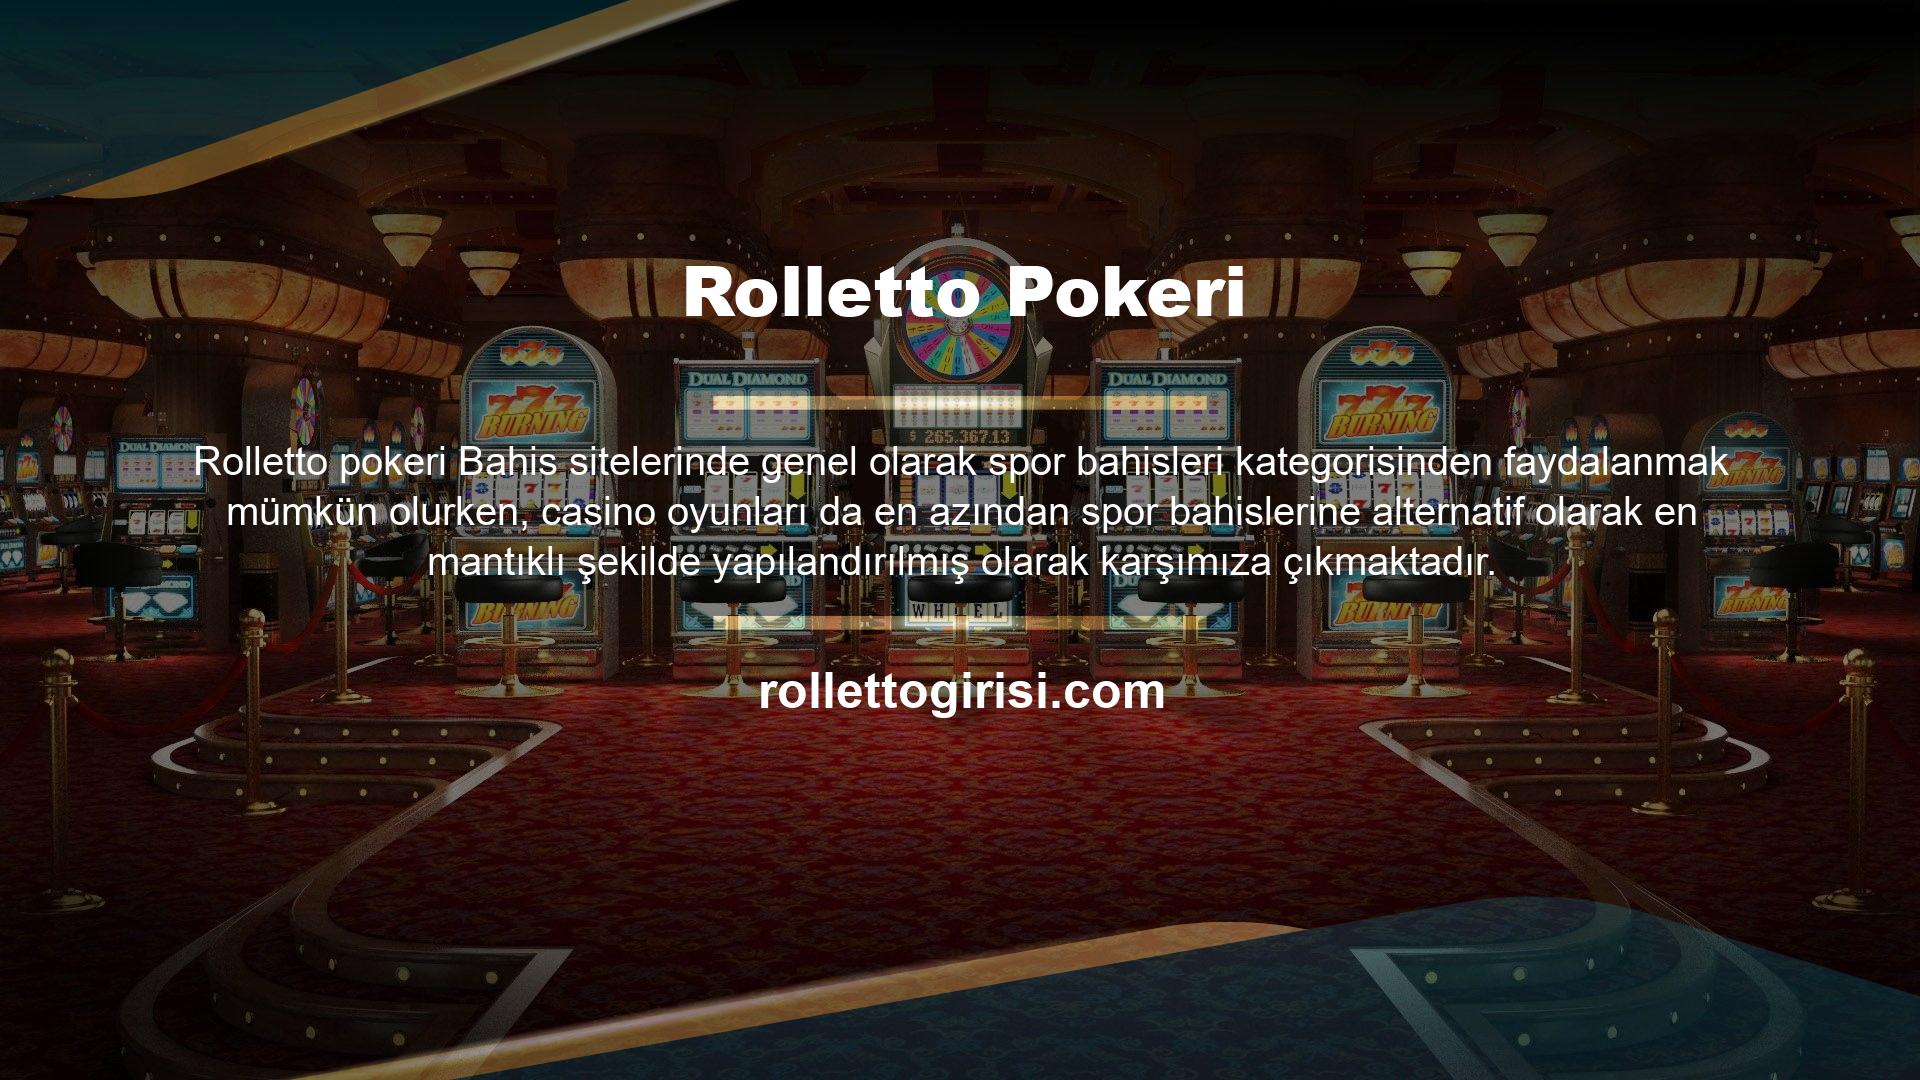 Rolletto bahislerinde bu tür bir işlem problemli olsa da casino oyunları da en rasyonel yapıda oynanmakta ve bahisçilerin çoğunluğu için fayda açısından da ön planda olacaktır